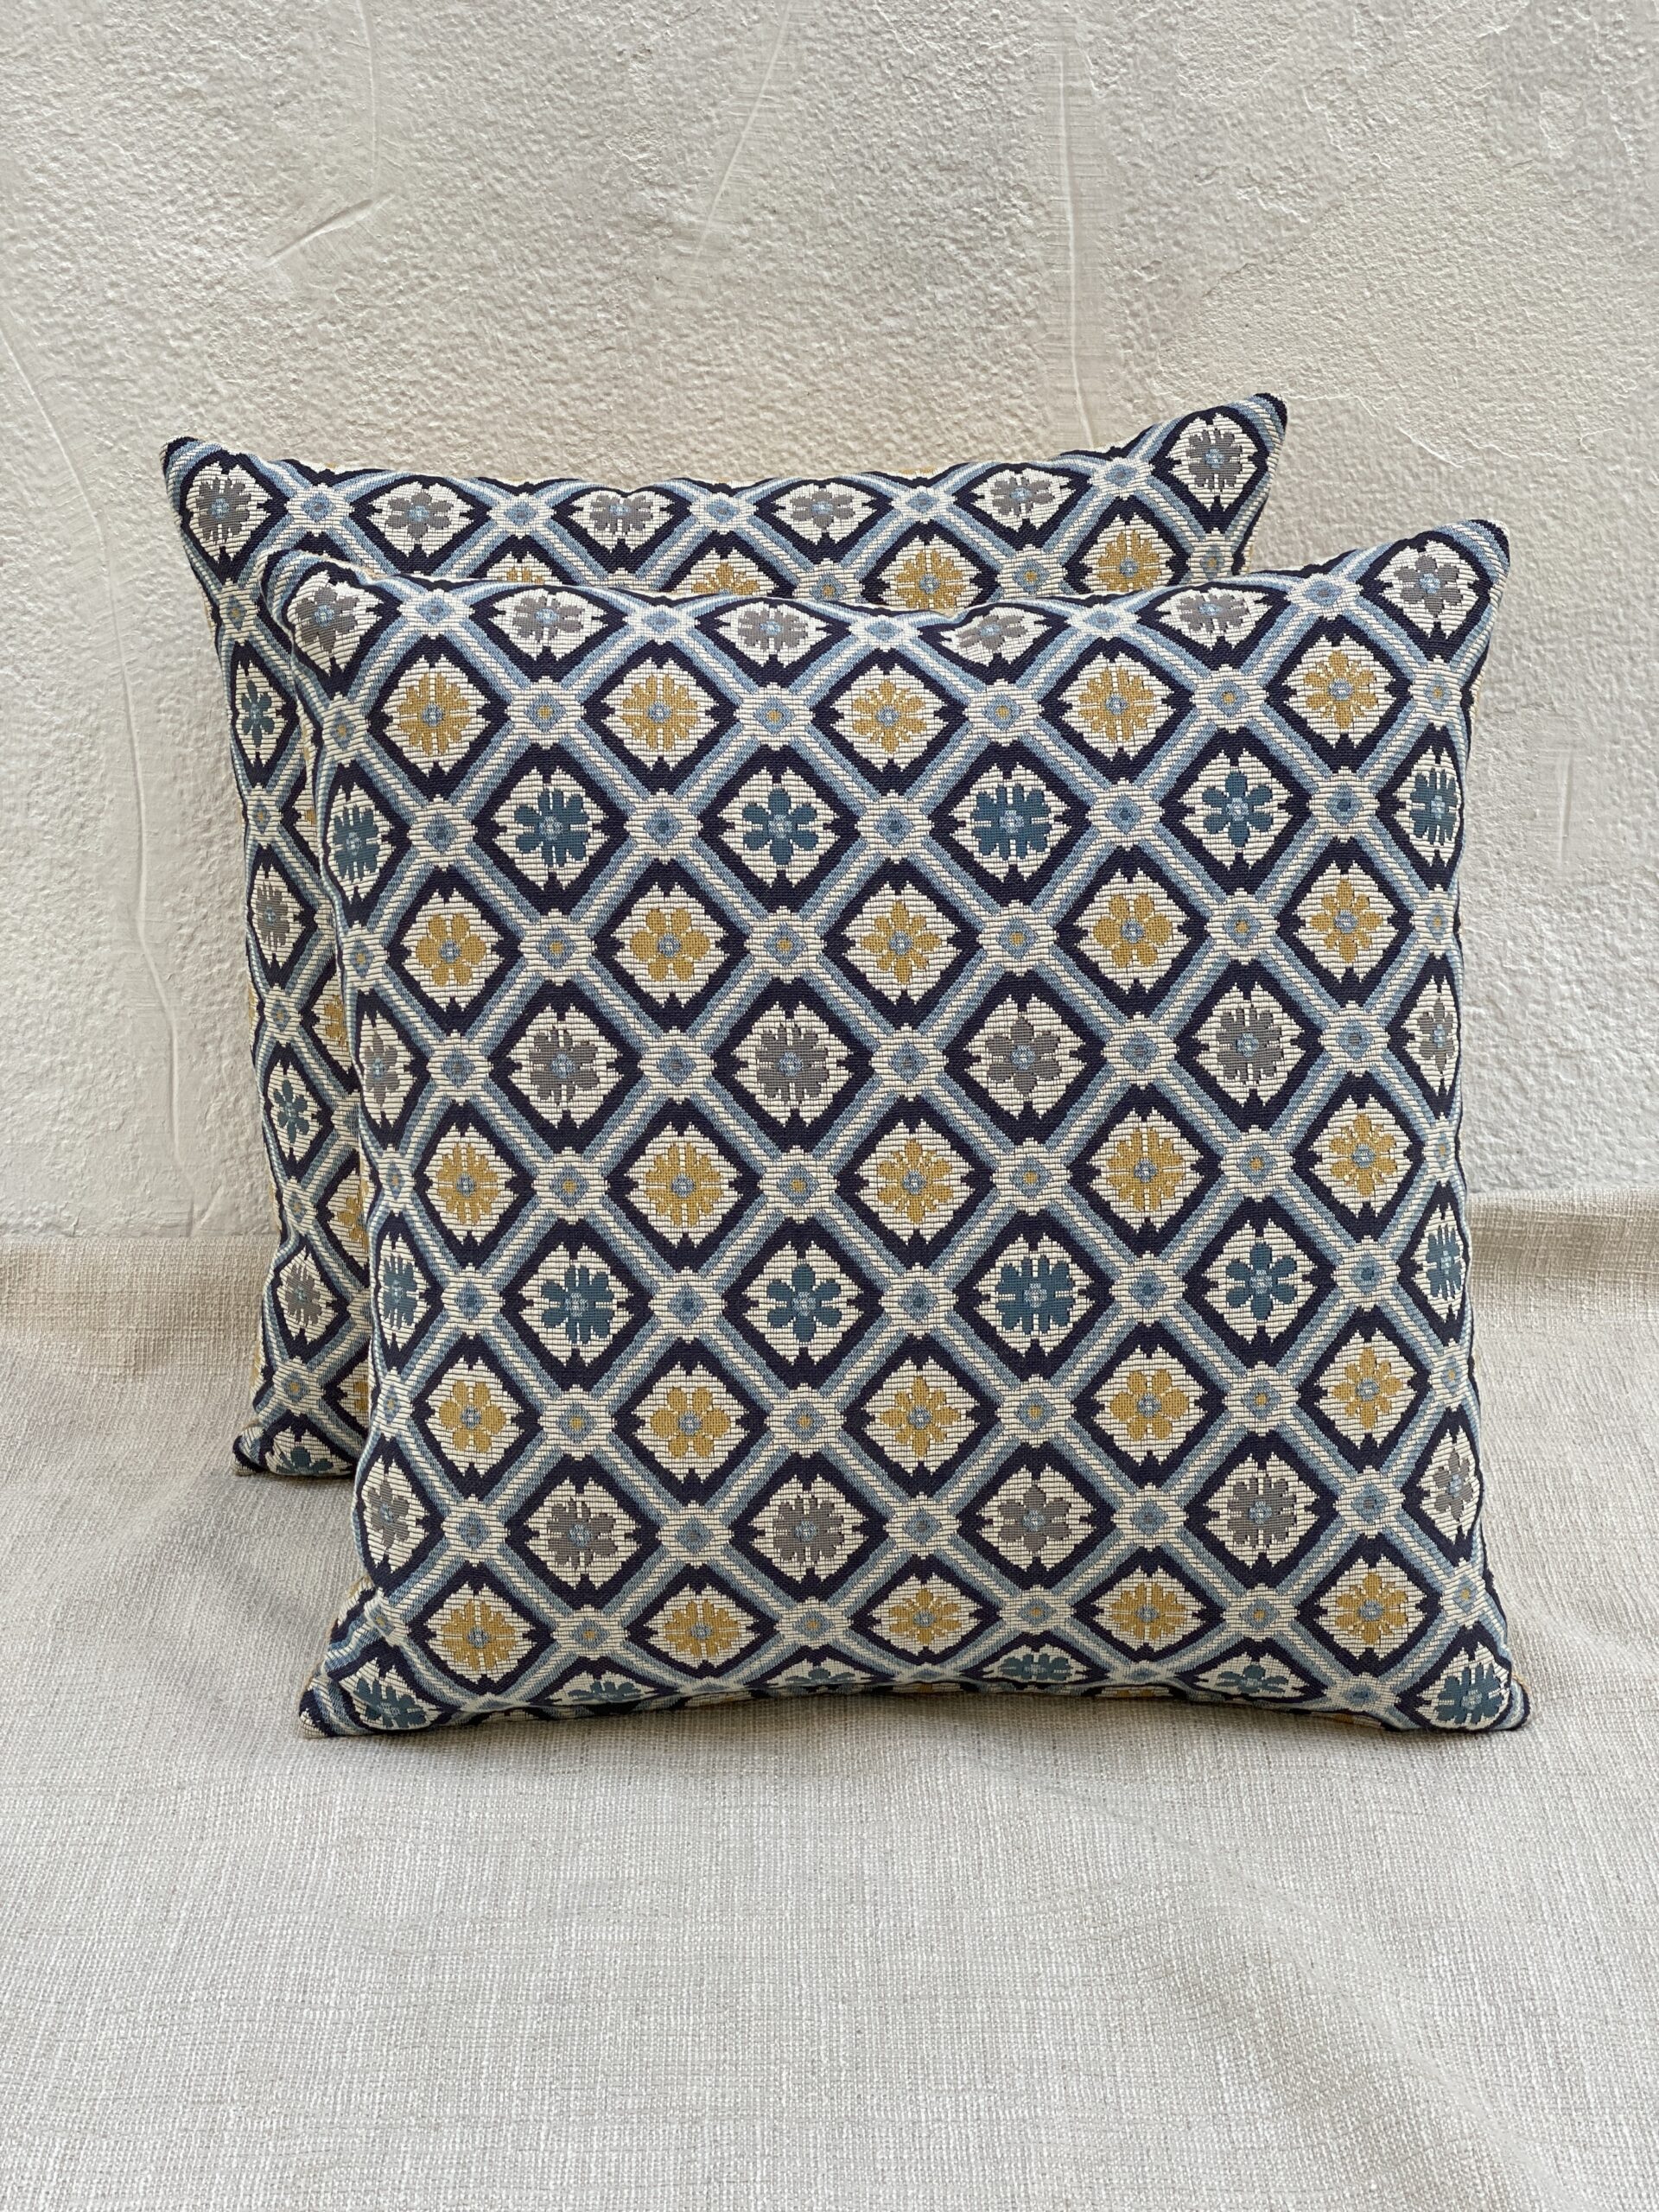 Schumacher Savonnerie Tapestry Pillows